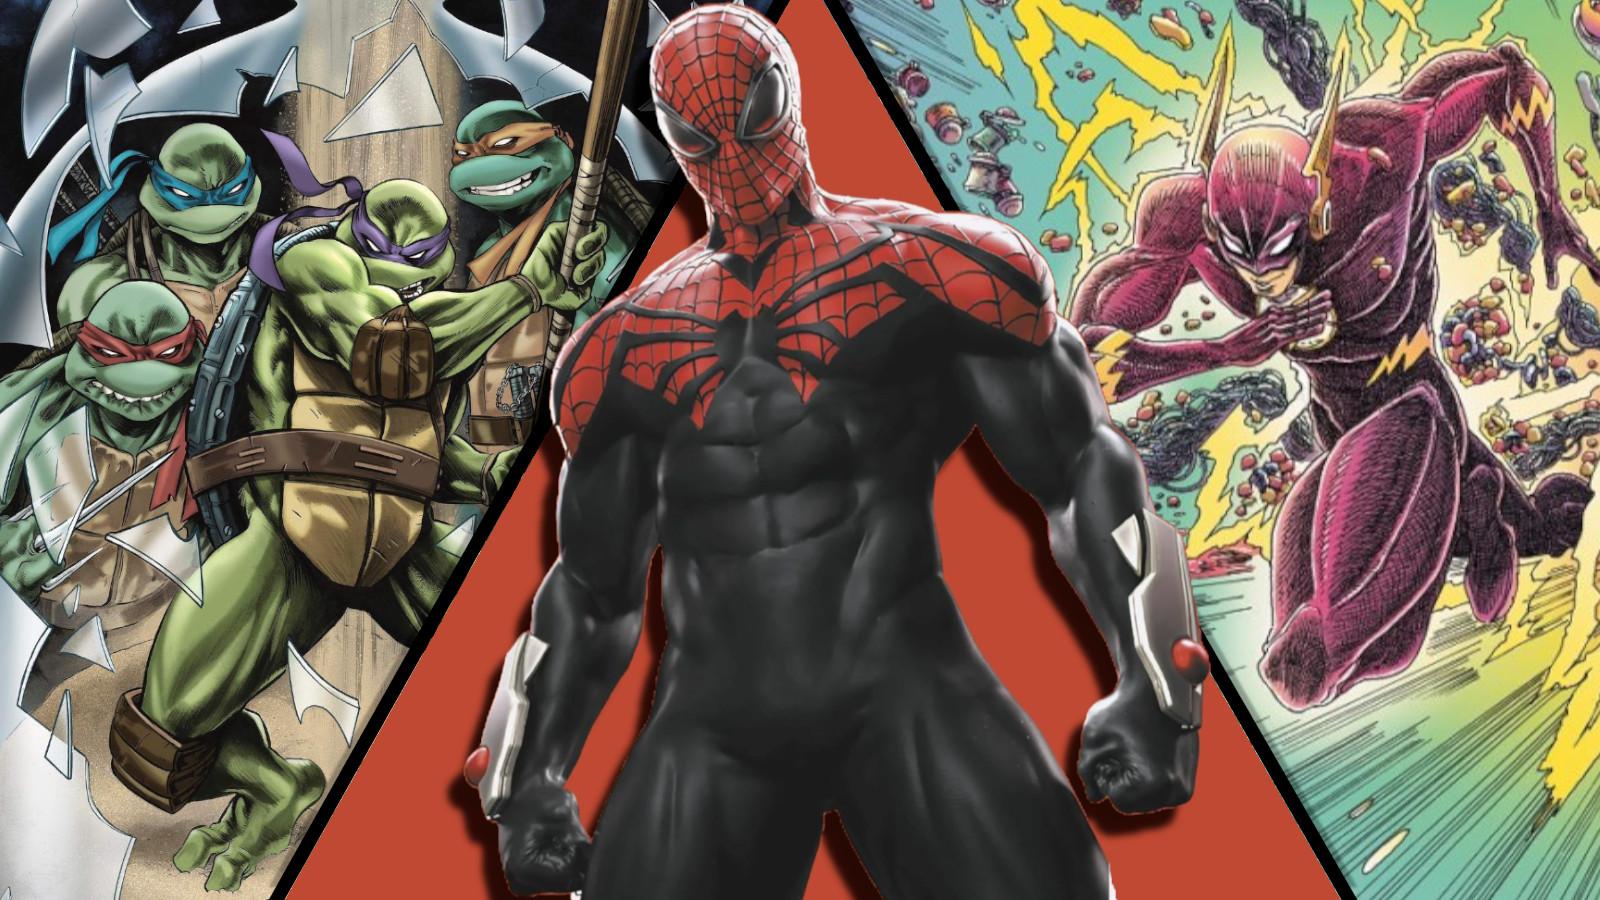 Teenage Mutant Ninja Turtles, Superior Spider-Man & The Flash